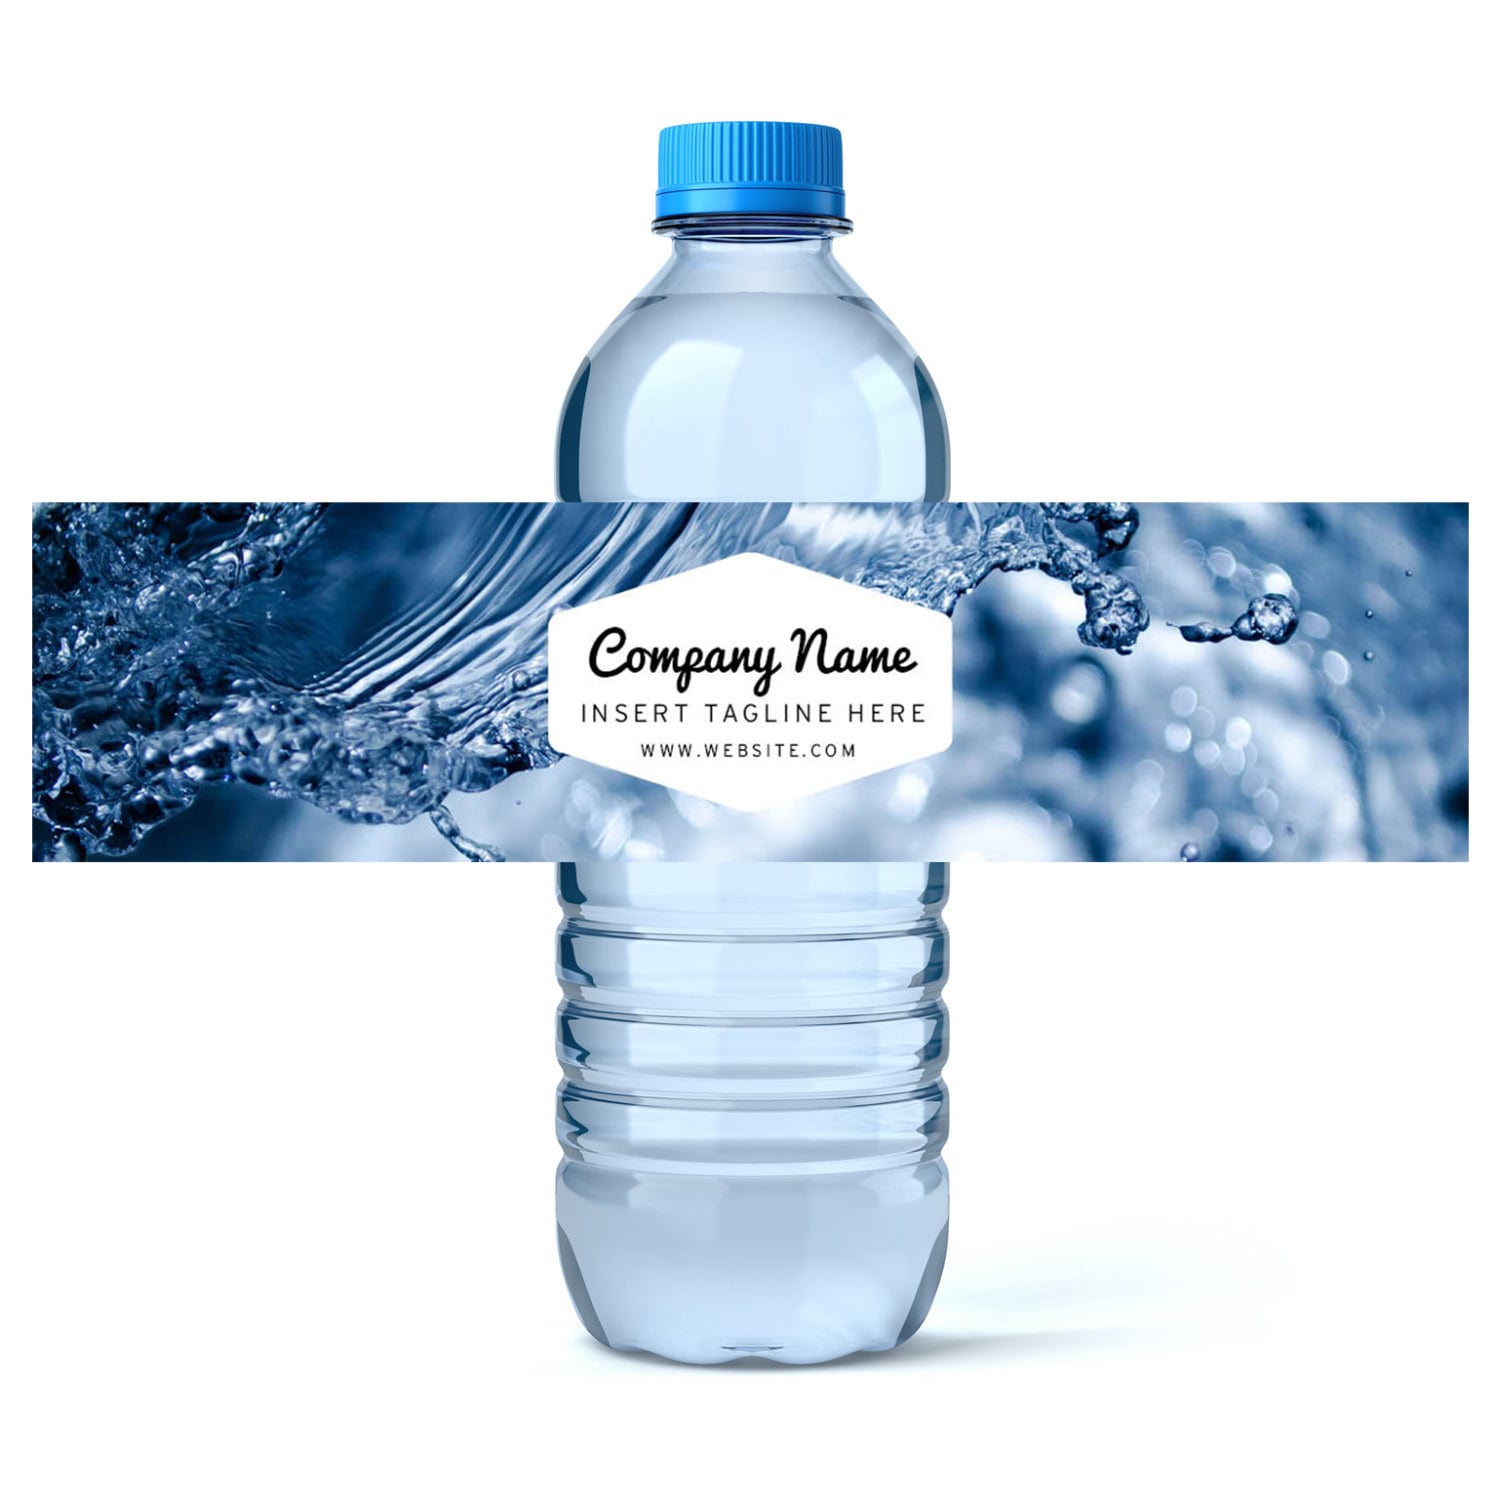 Bottle Of Water Label - для просмотра изображений войдите на сайт